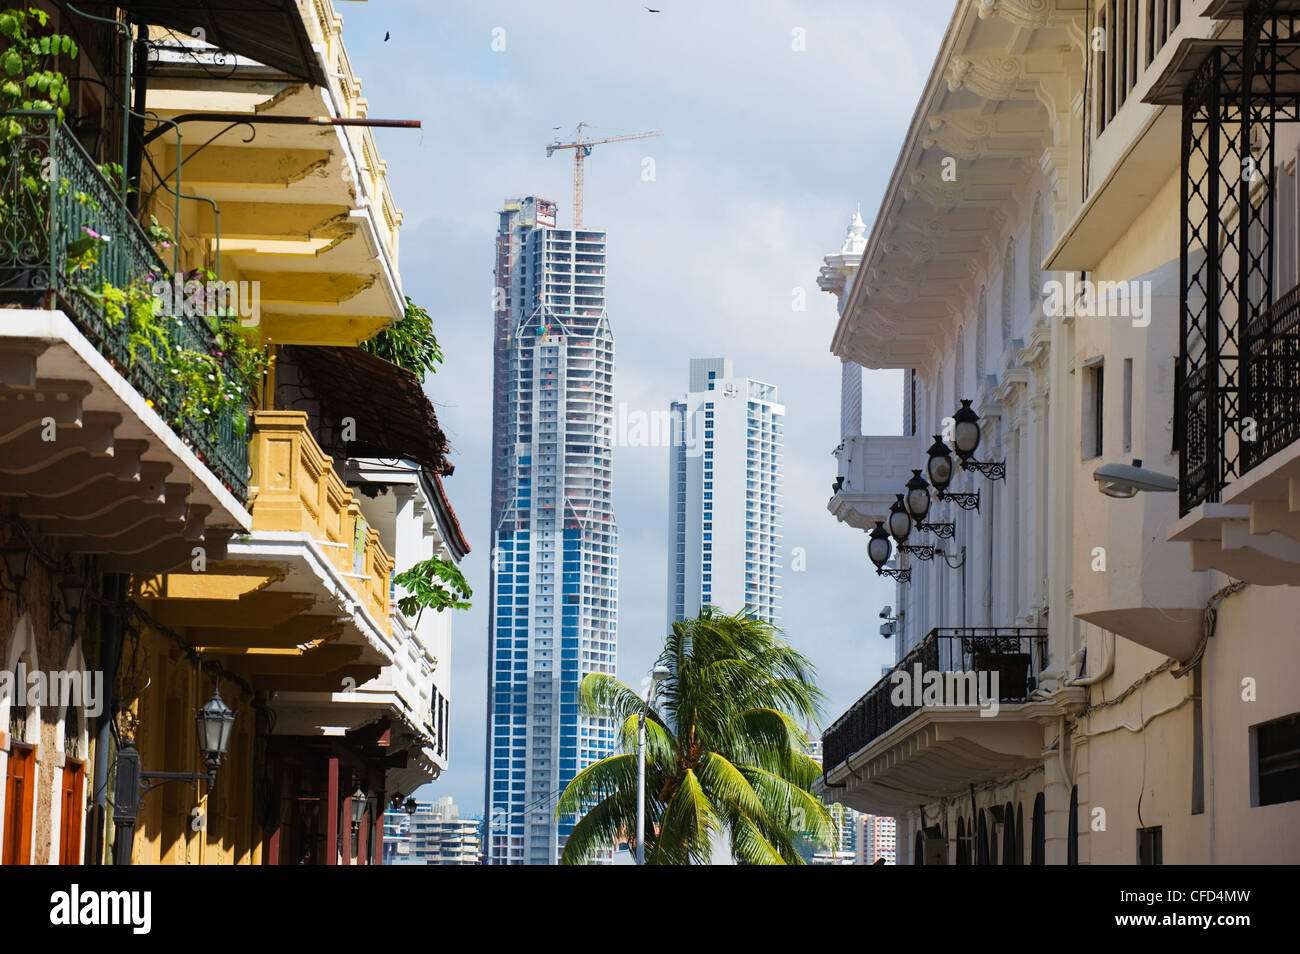 Les gratte-ciel modernes et historiques de la vieille ville, site du patrimoine mondial de l'UNESCO, la ville de Panama, Panama, Amérique Centrale Banque D'Images